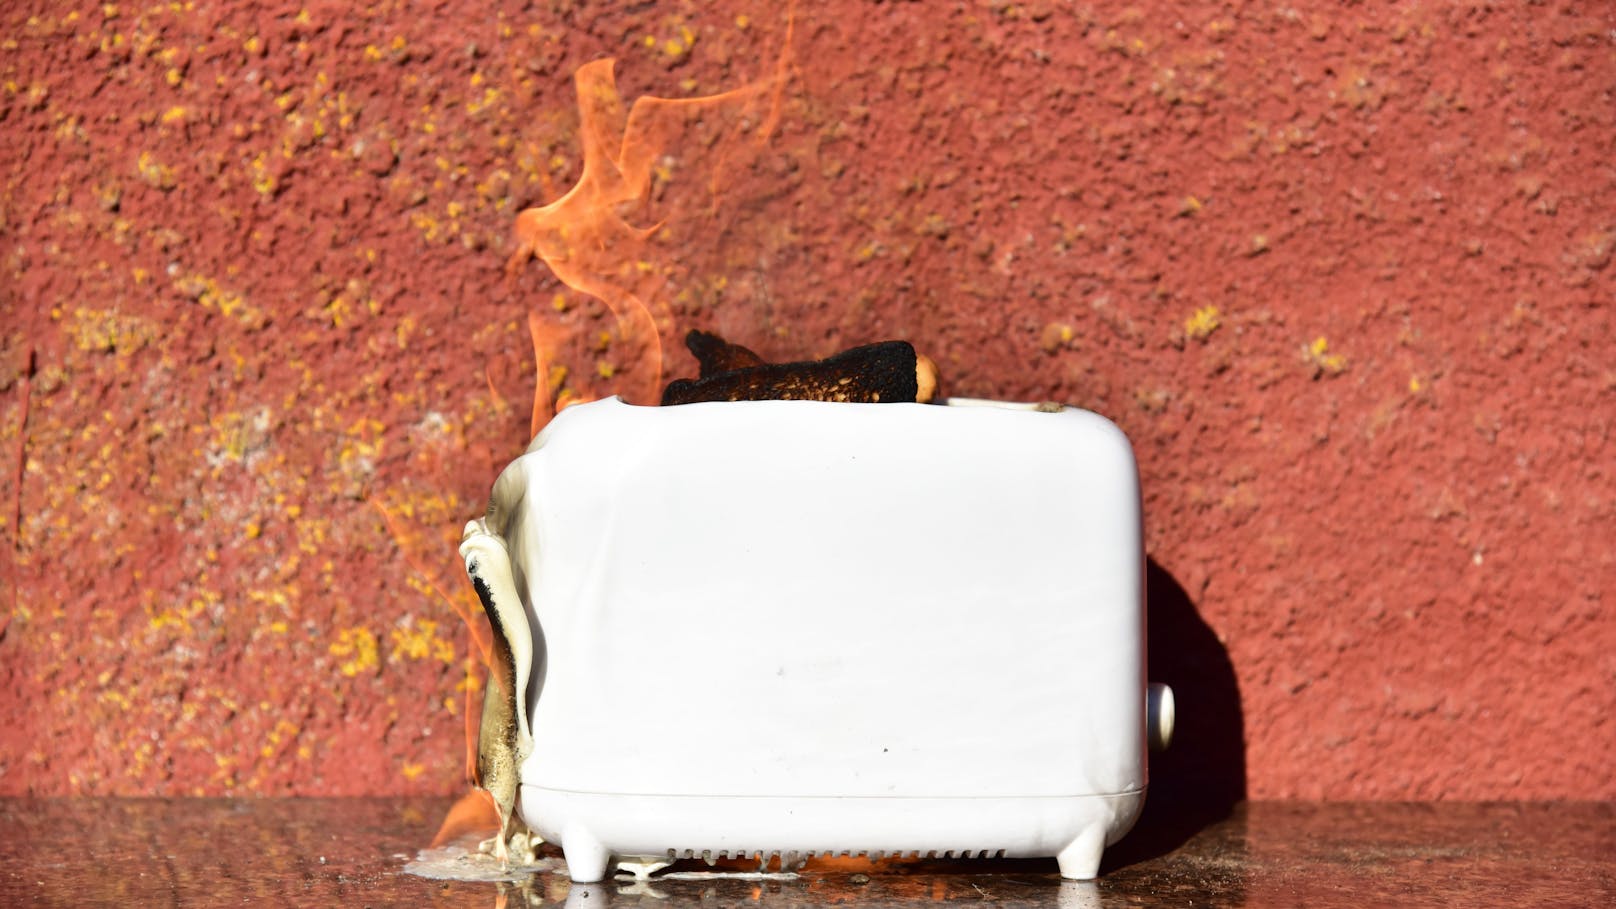 Kleiner Spoiler: Der Toaster hat es in die Top 5 der gefährlichsten Haushaltsgeräte geschafft.